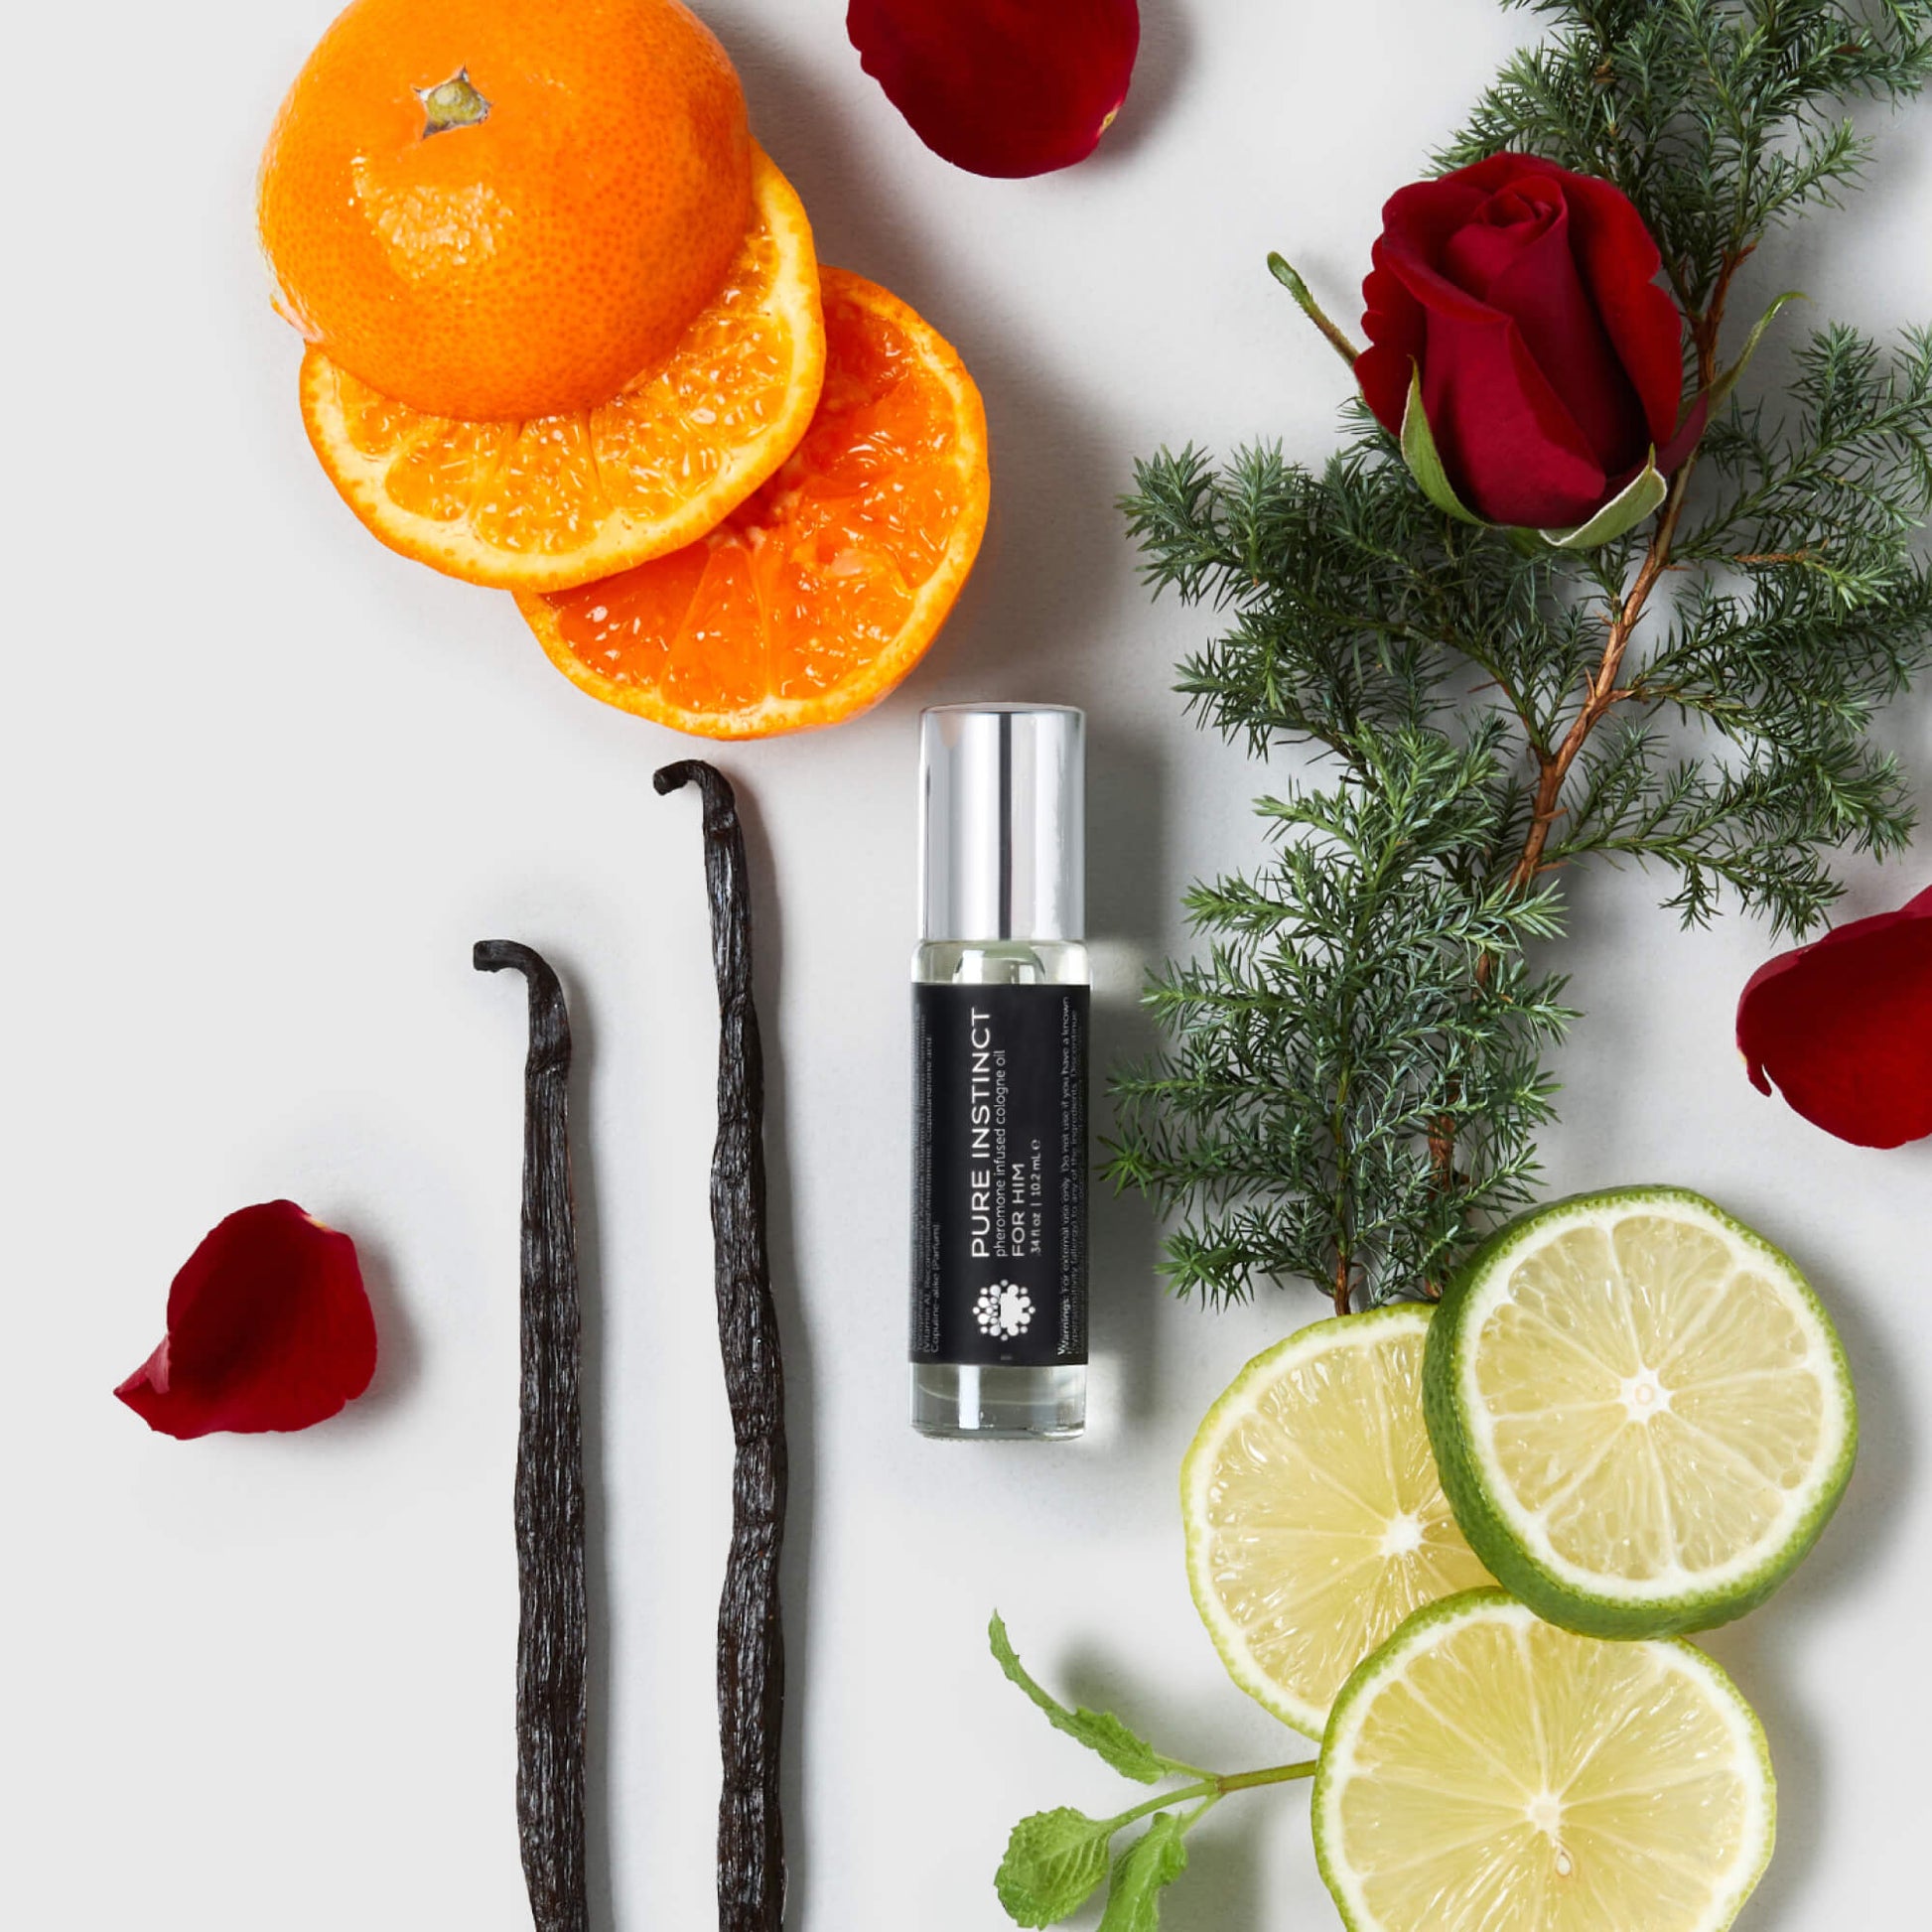 Pheromones Infused Essential Oil Perfume Cologne - Unisex for Women/Men,  Refreshing & Long-Lasting Light Fragrance Pheromone Perfume Roll On Perfume